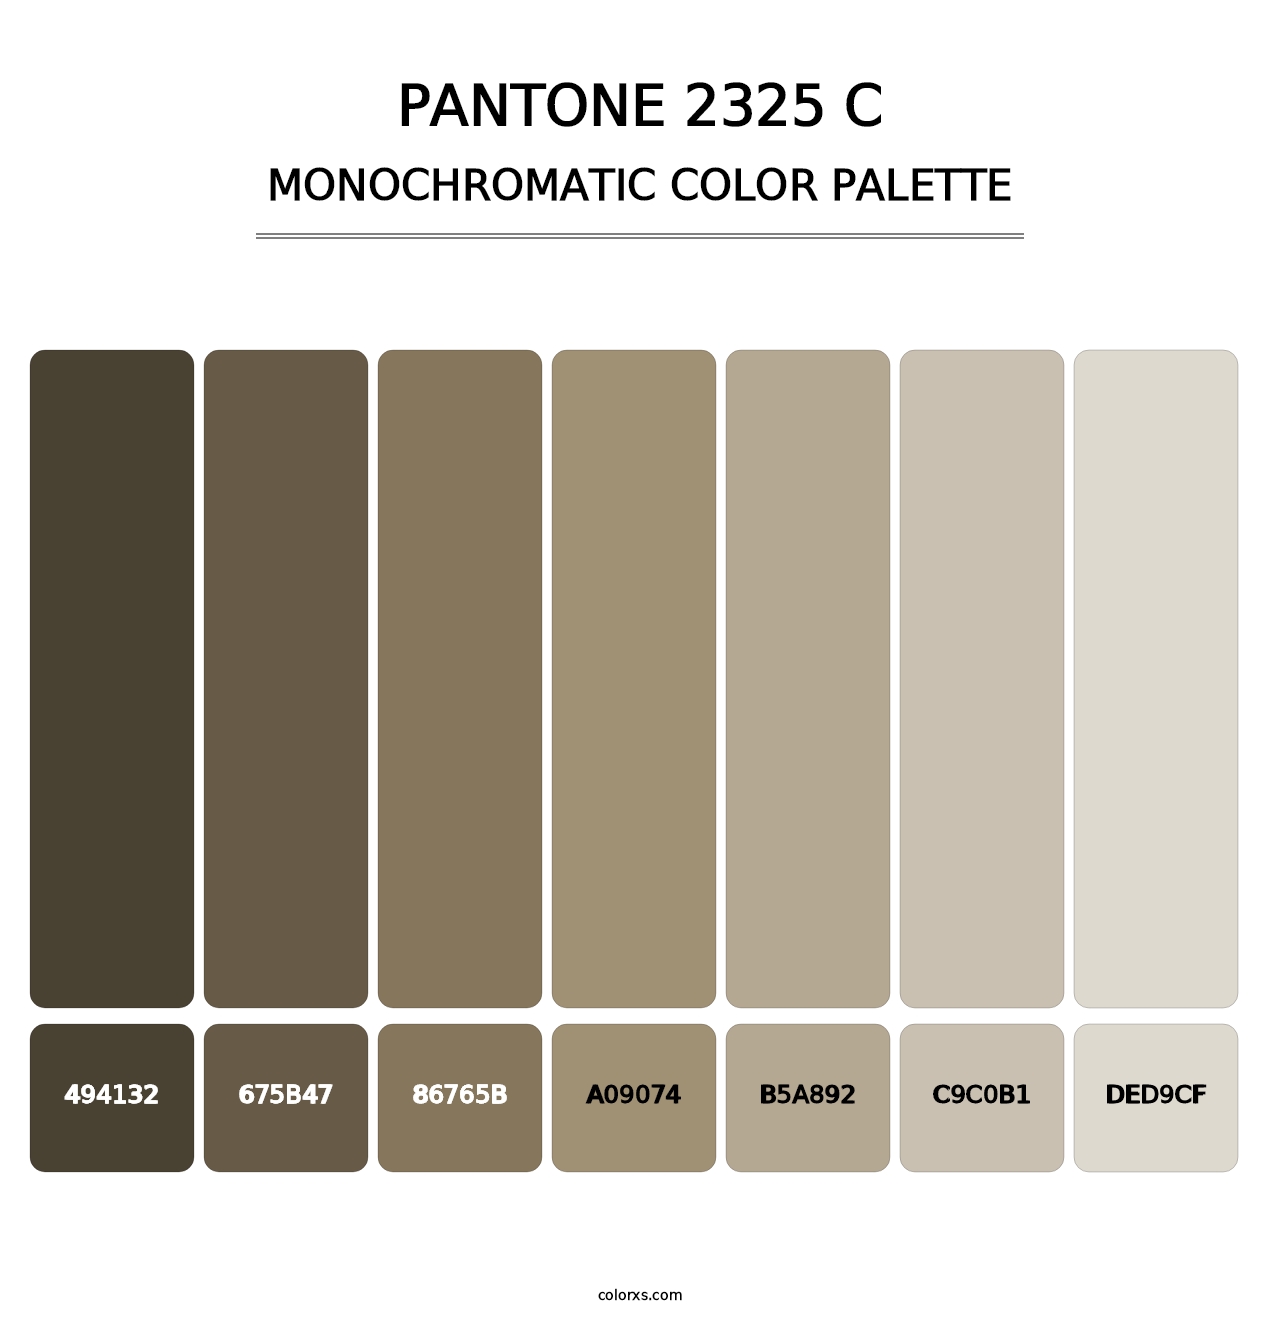 PANTONE 2325 C - Monochromatic Color Palette